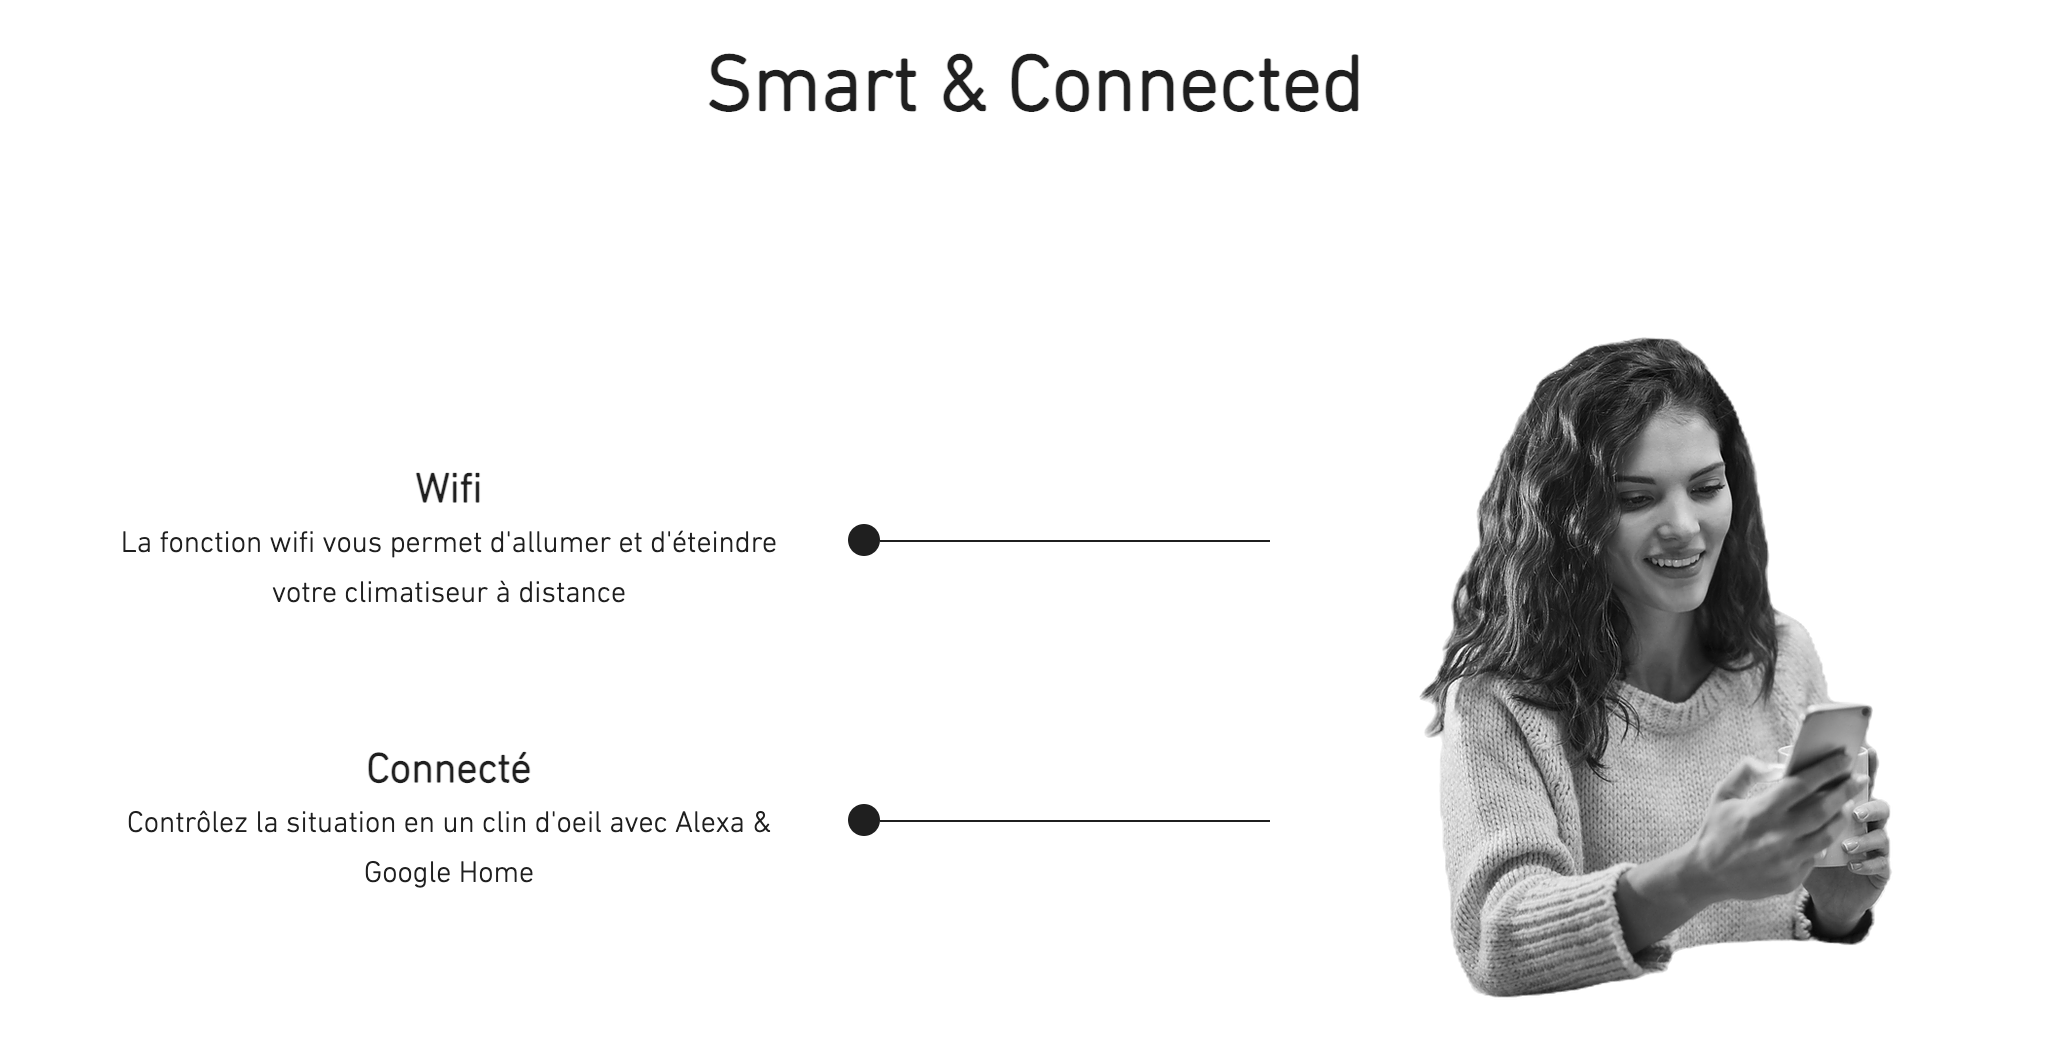 Smart & connected : une fonction wifi pour allumer et éteindre le climatiseur à distance. Un climatiseur connecté que vous pouvez contrôler avec Google Home ou Alexa